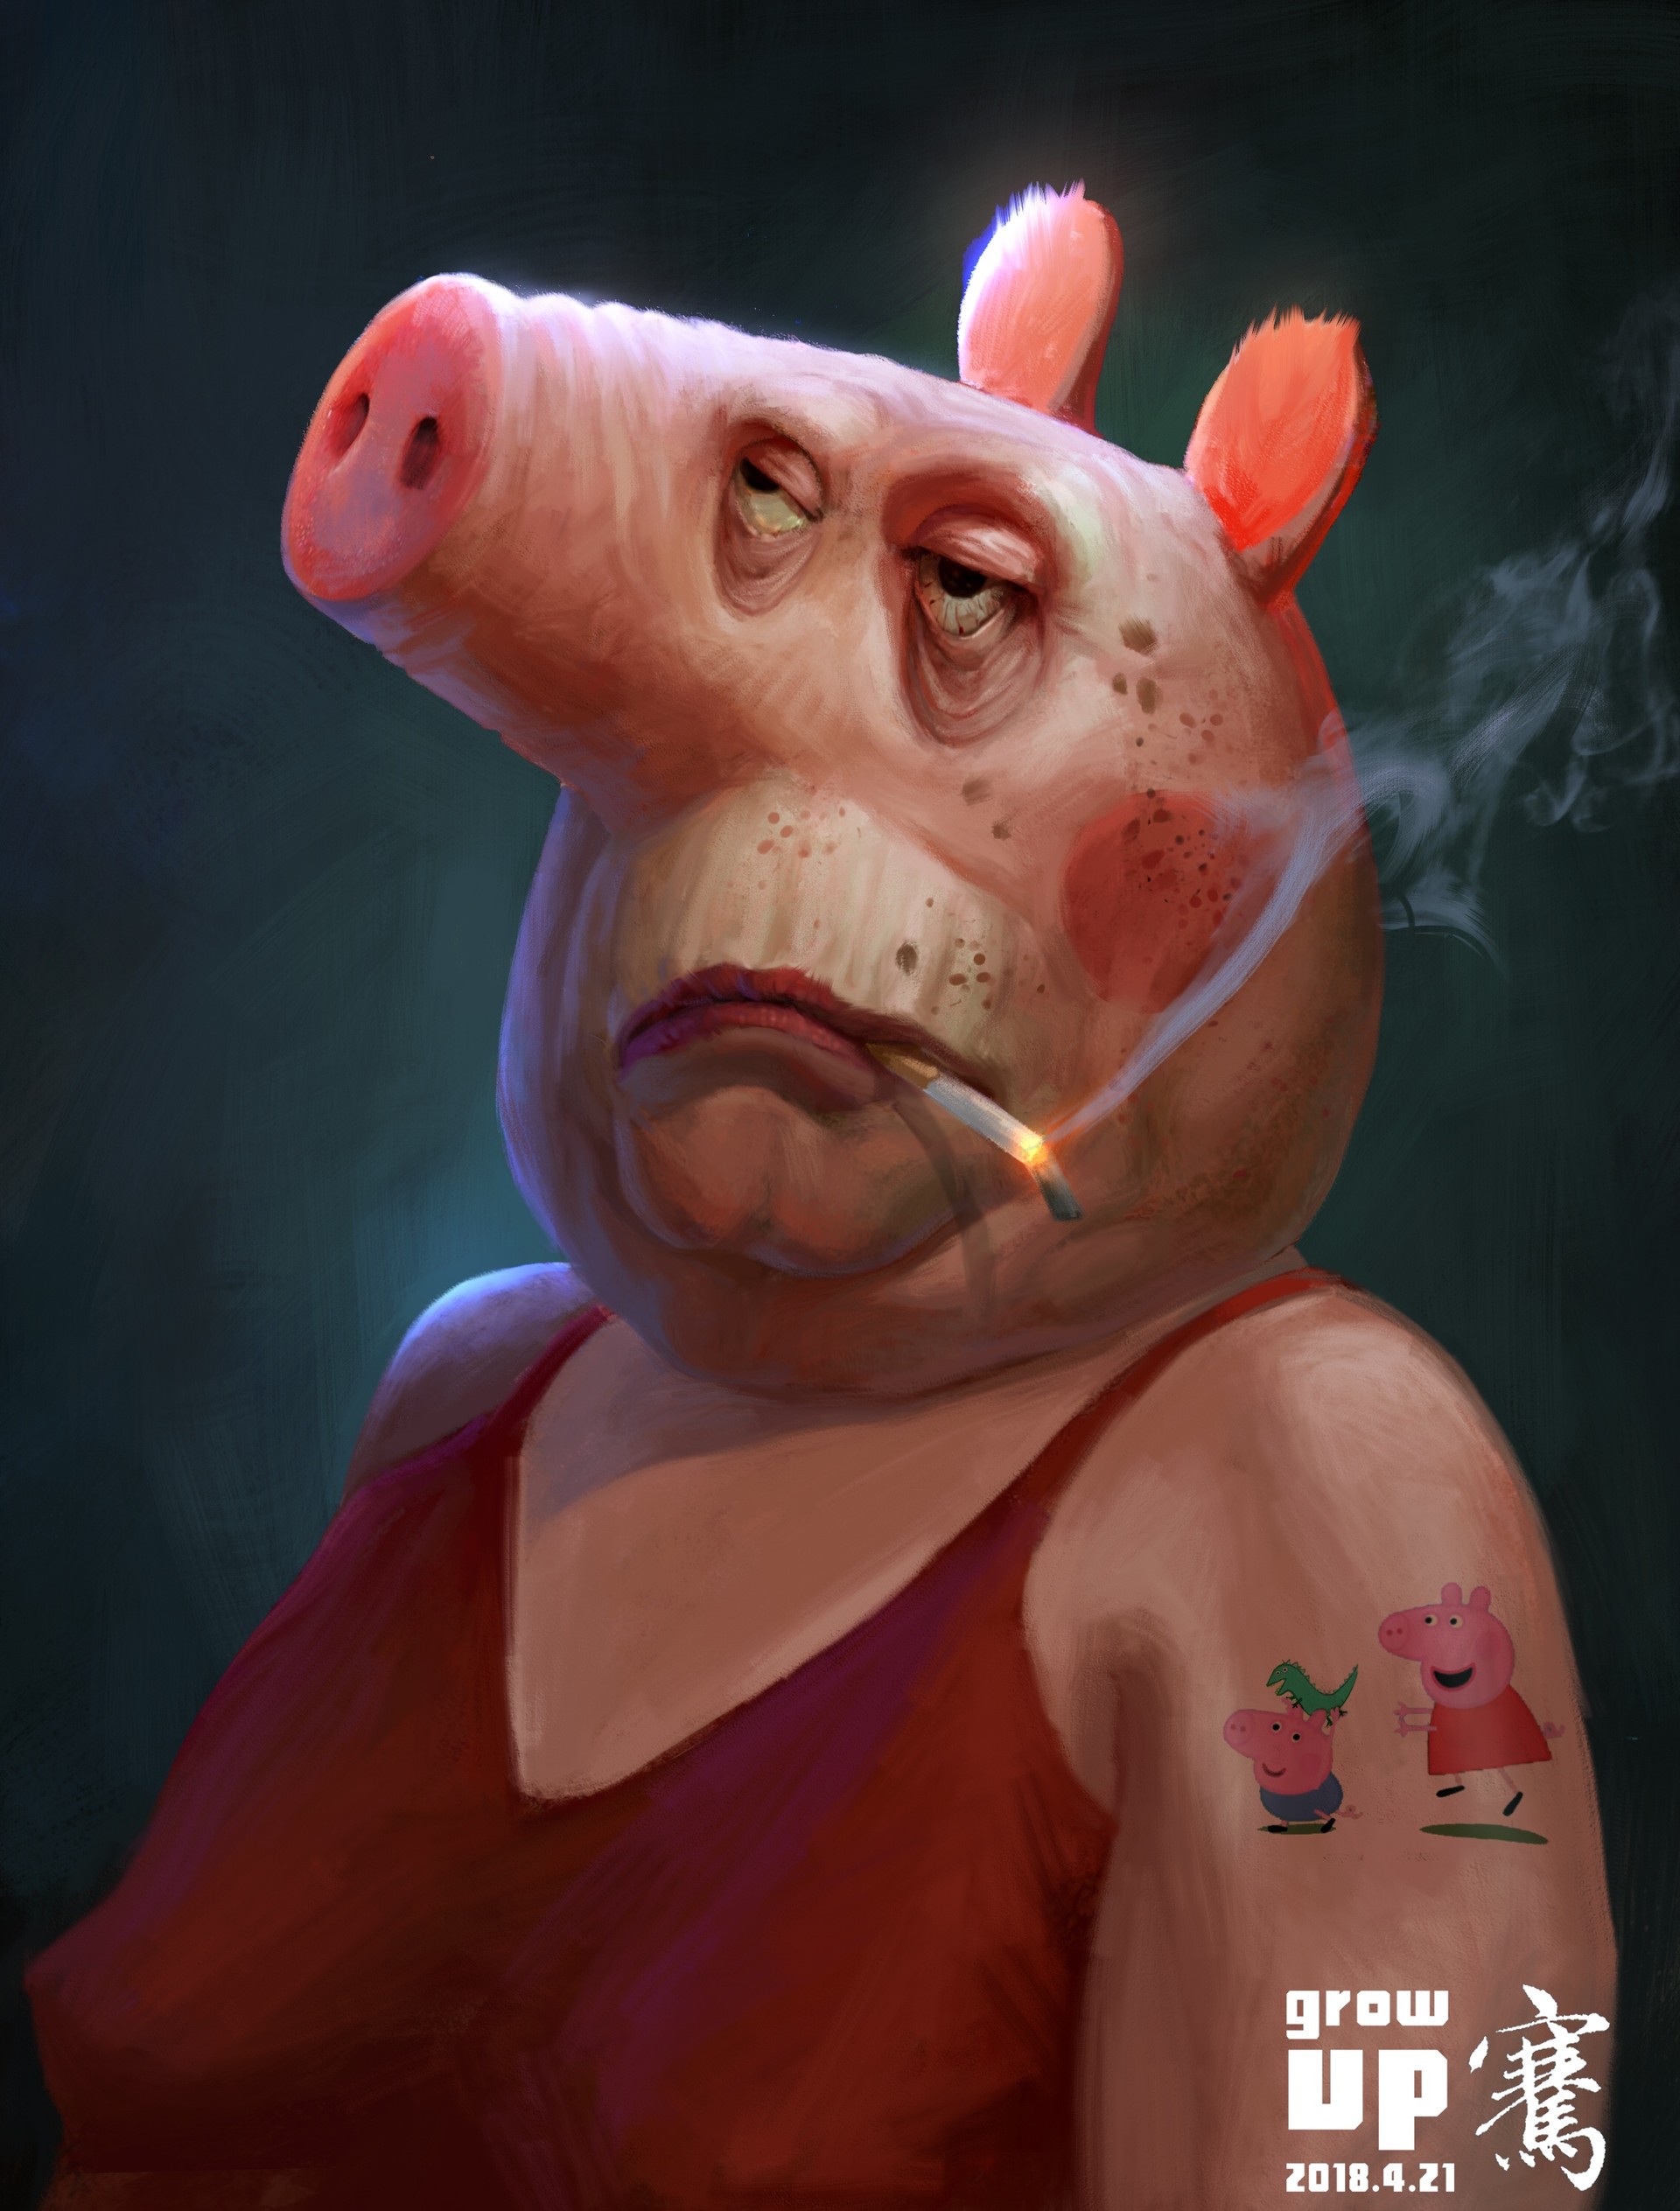 Существует свинтус. Свиньи. Свинья с сигаретой. Cdbyzm c cbufhjq.